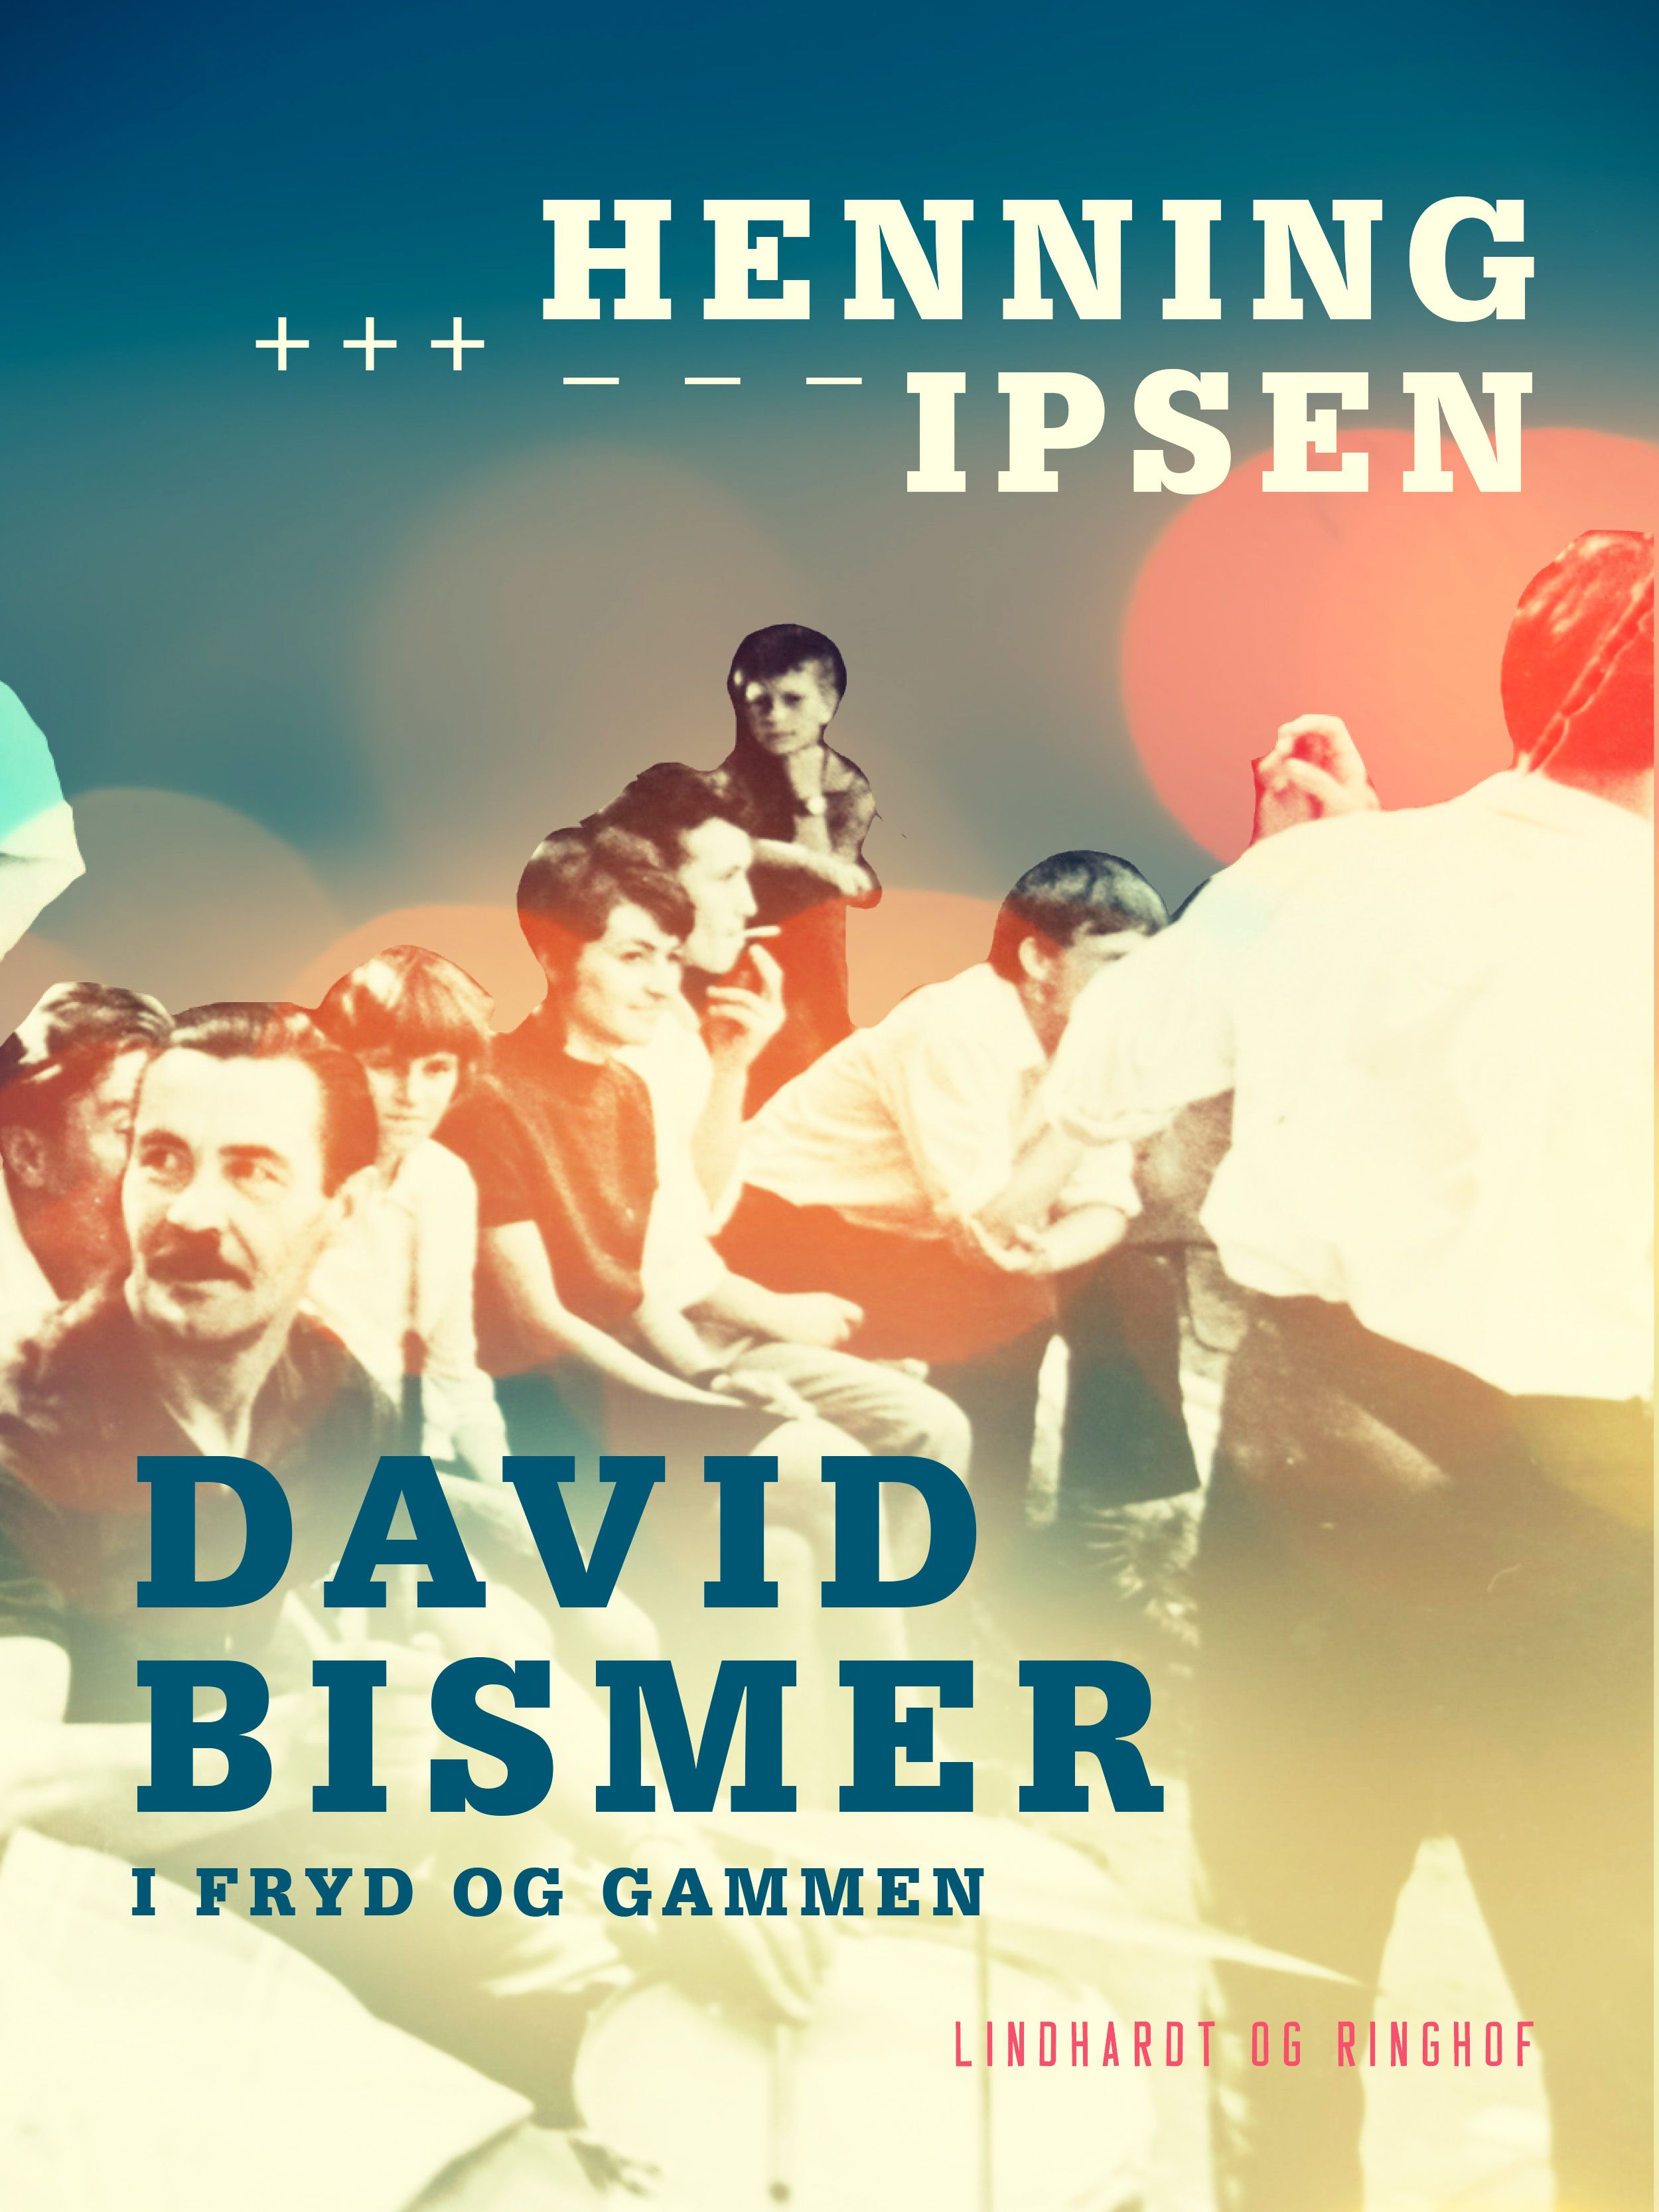 David Bismer i fryd og gammen, e-bok av Henning Ipsen